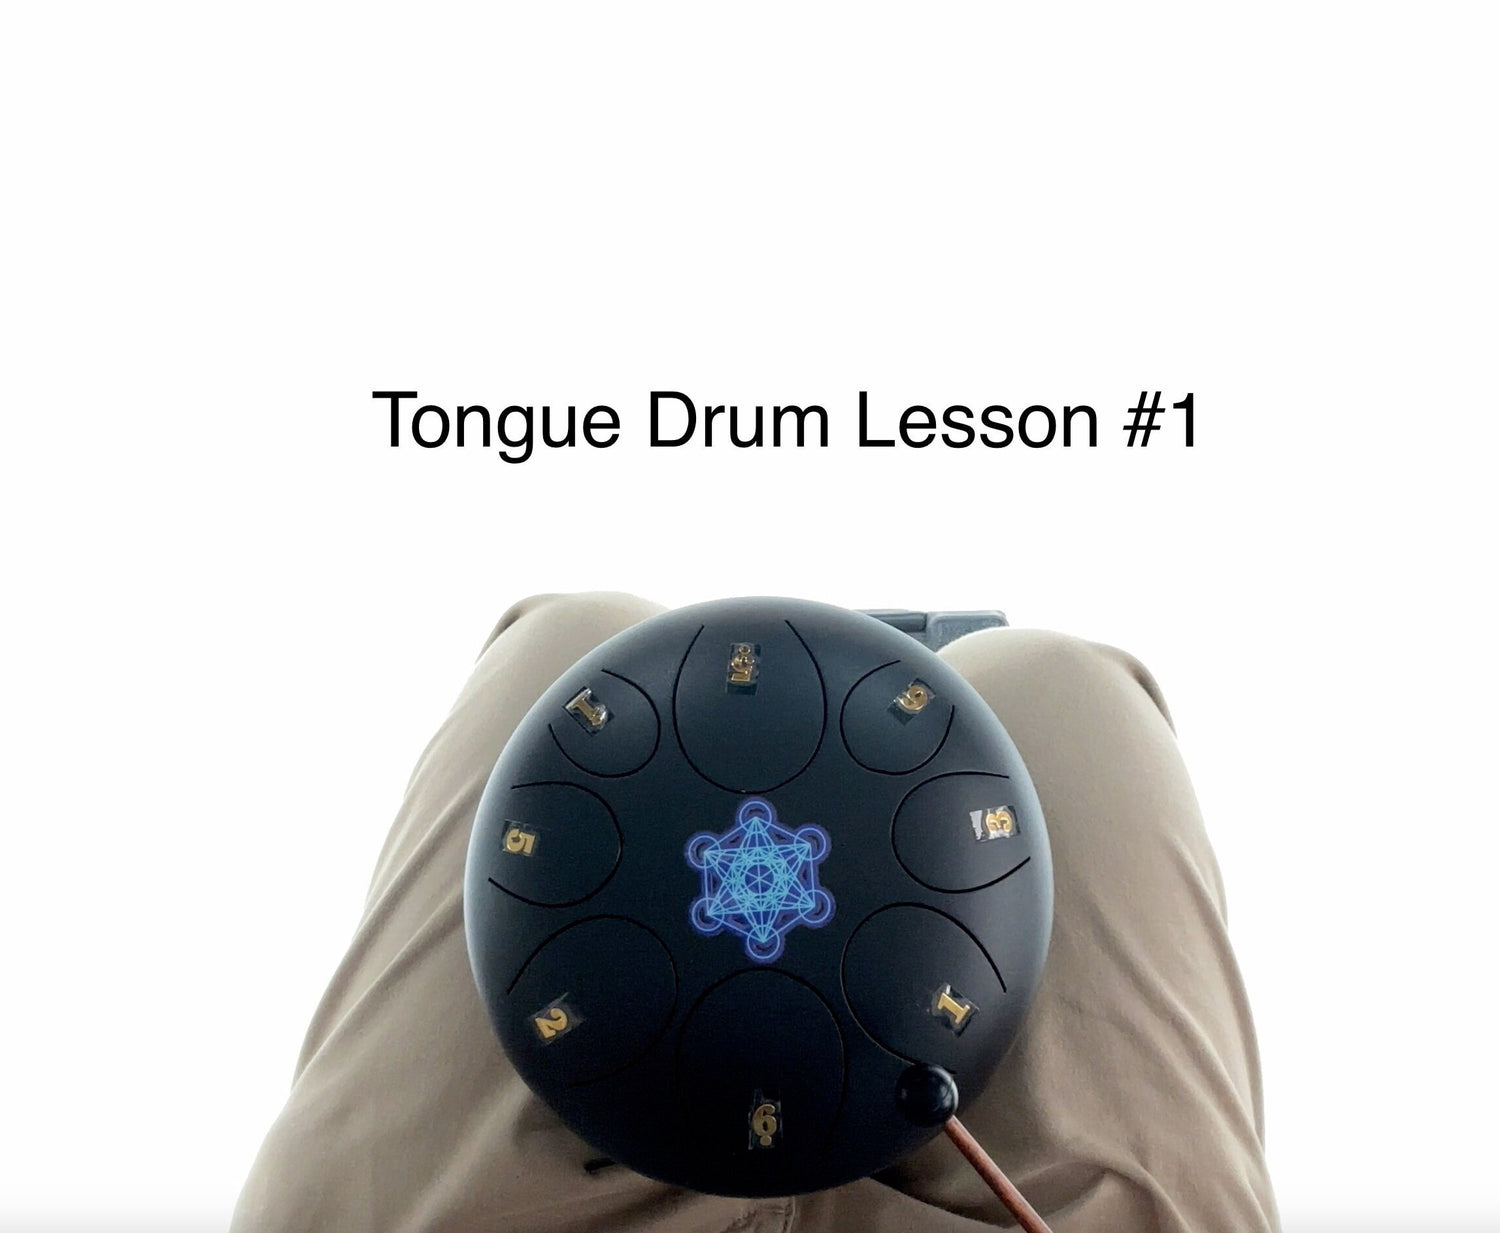 8" Tongue Drum Lesson #1, Instructional Video, Shamanic Drum, Ethereal Drum Vibration, Tank Drum, Drum Circle, Sound Bath, Sound Vibration